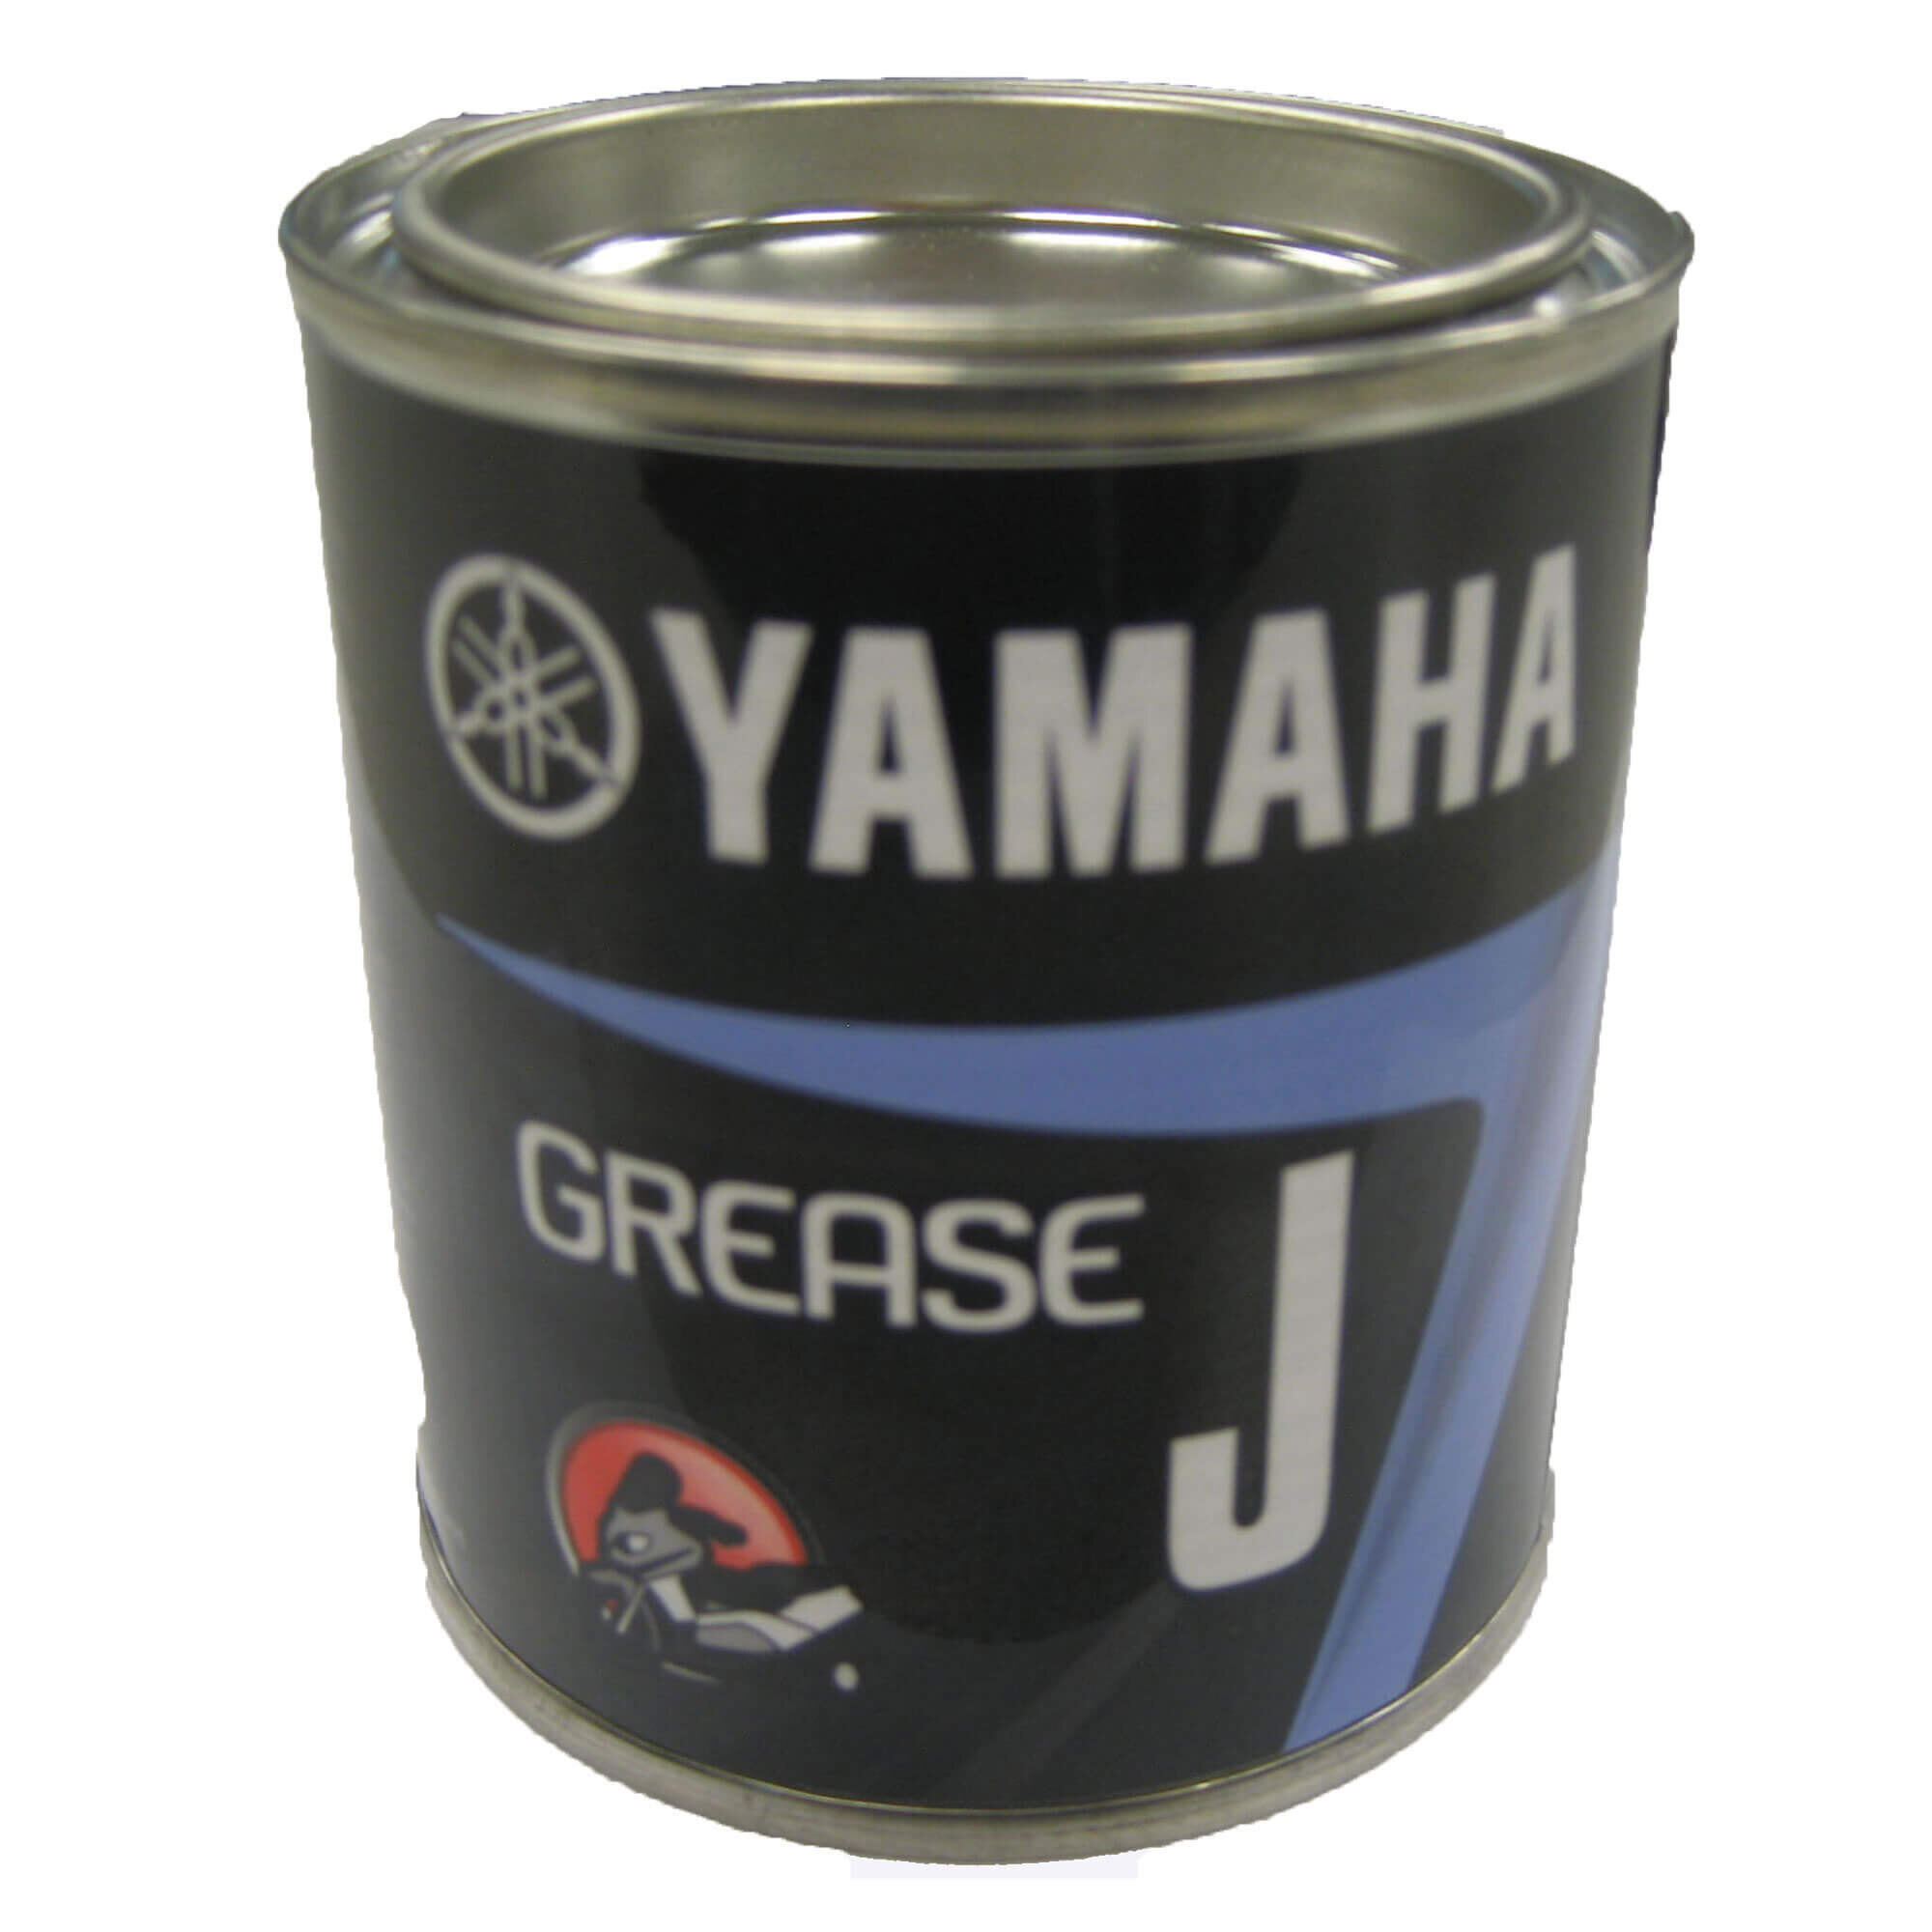 Yamaha Rear Drive Grease